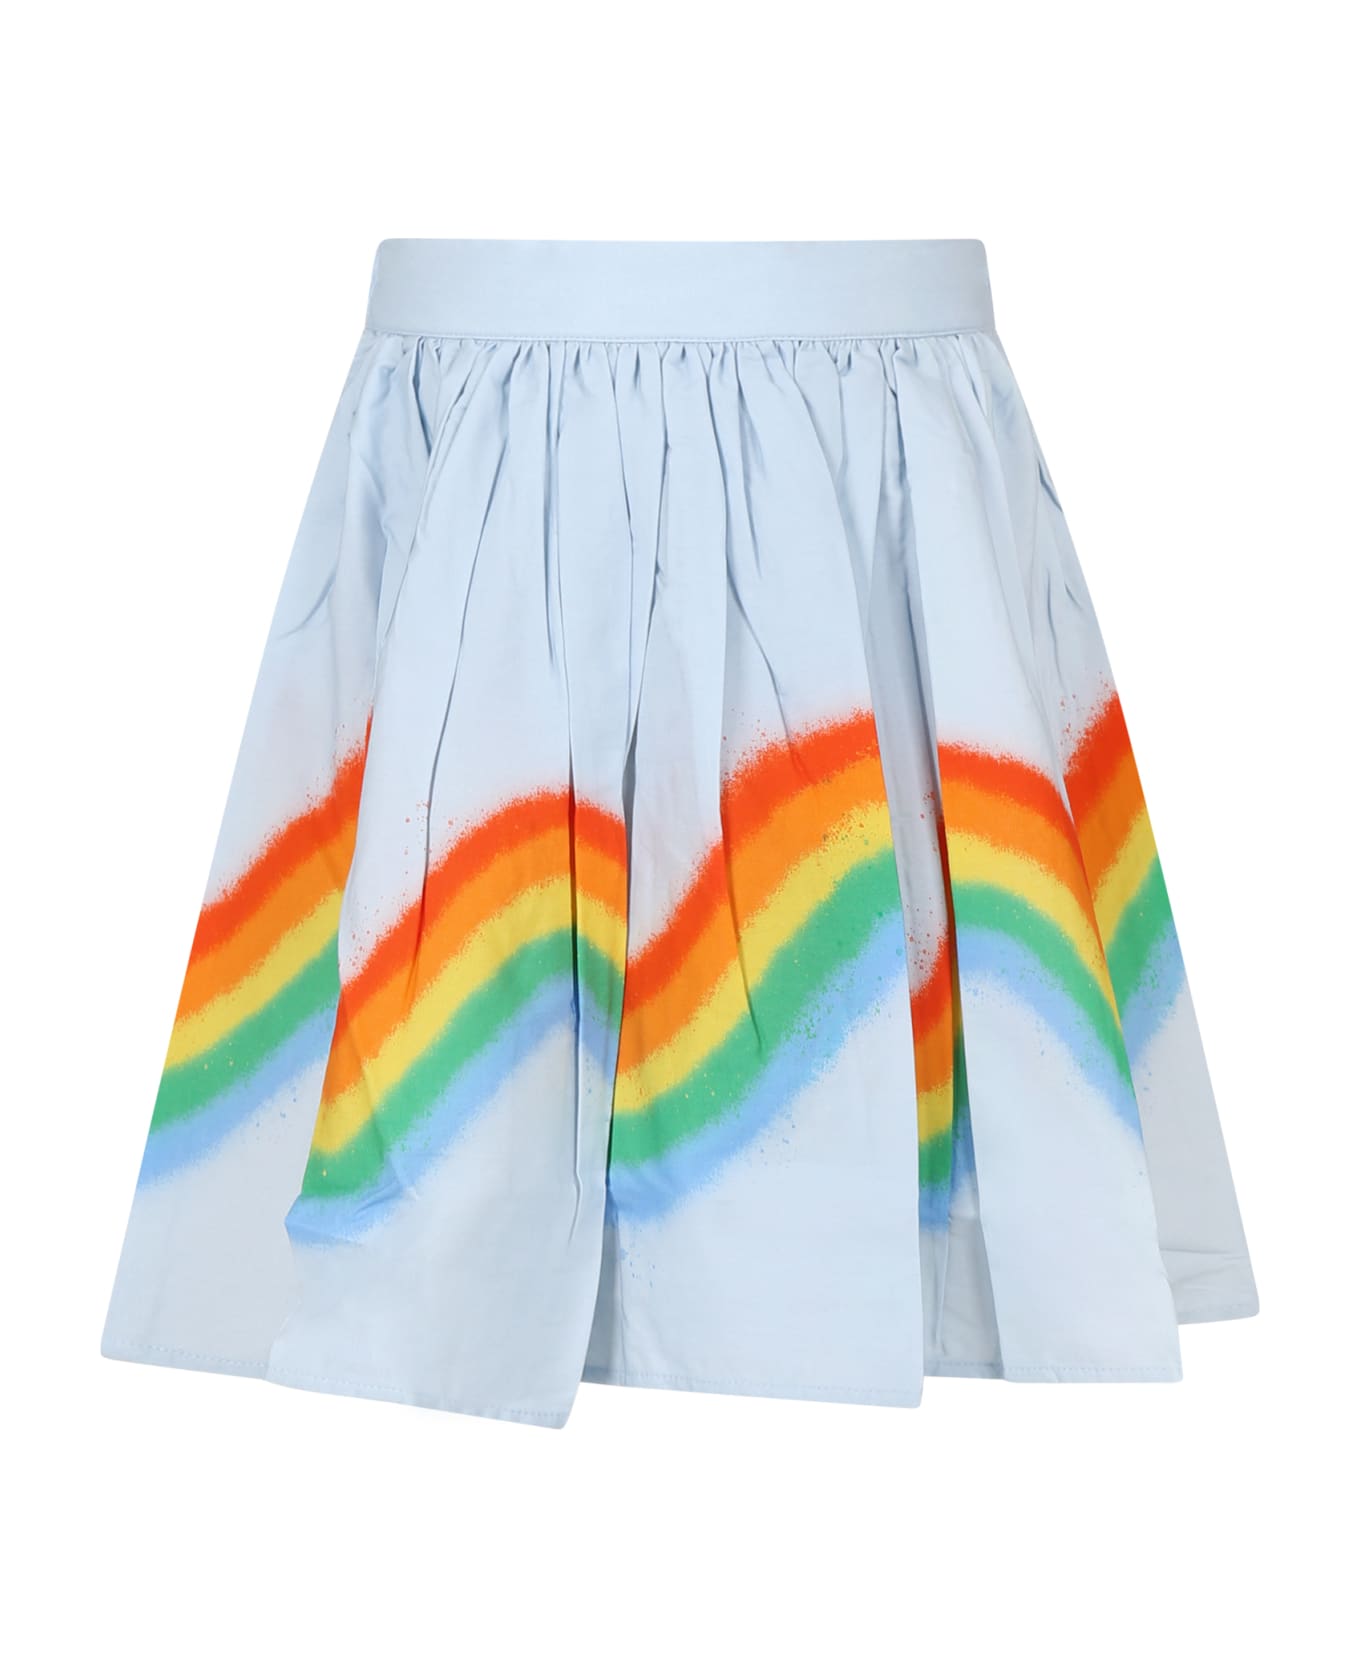 Molo Casual Sky Blue Skirt Bonnie For Girl With Rainbow - Light Blue